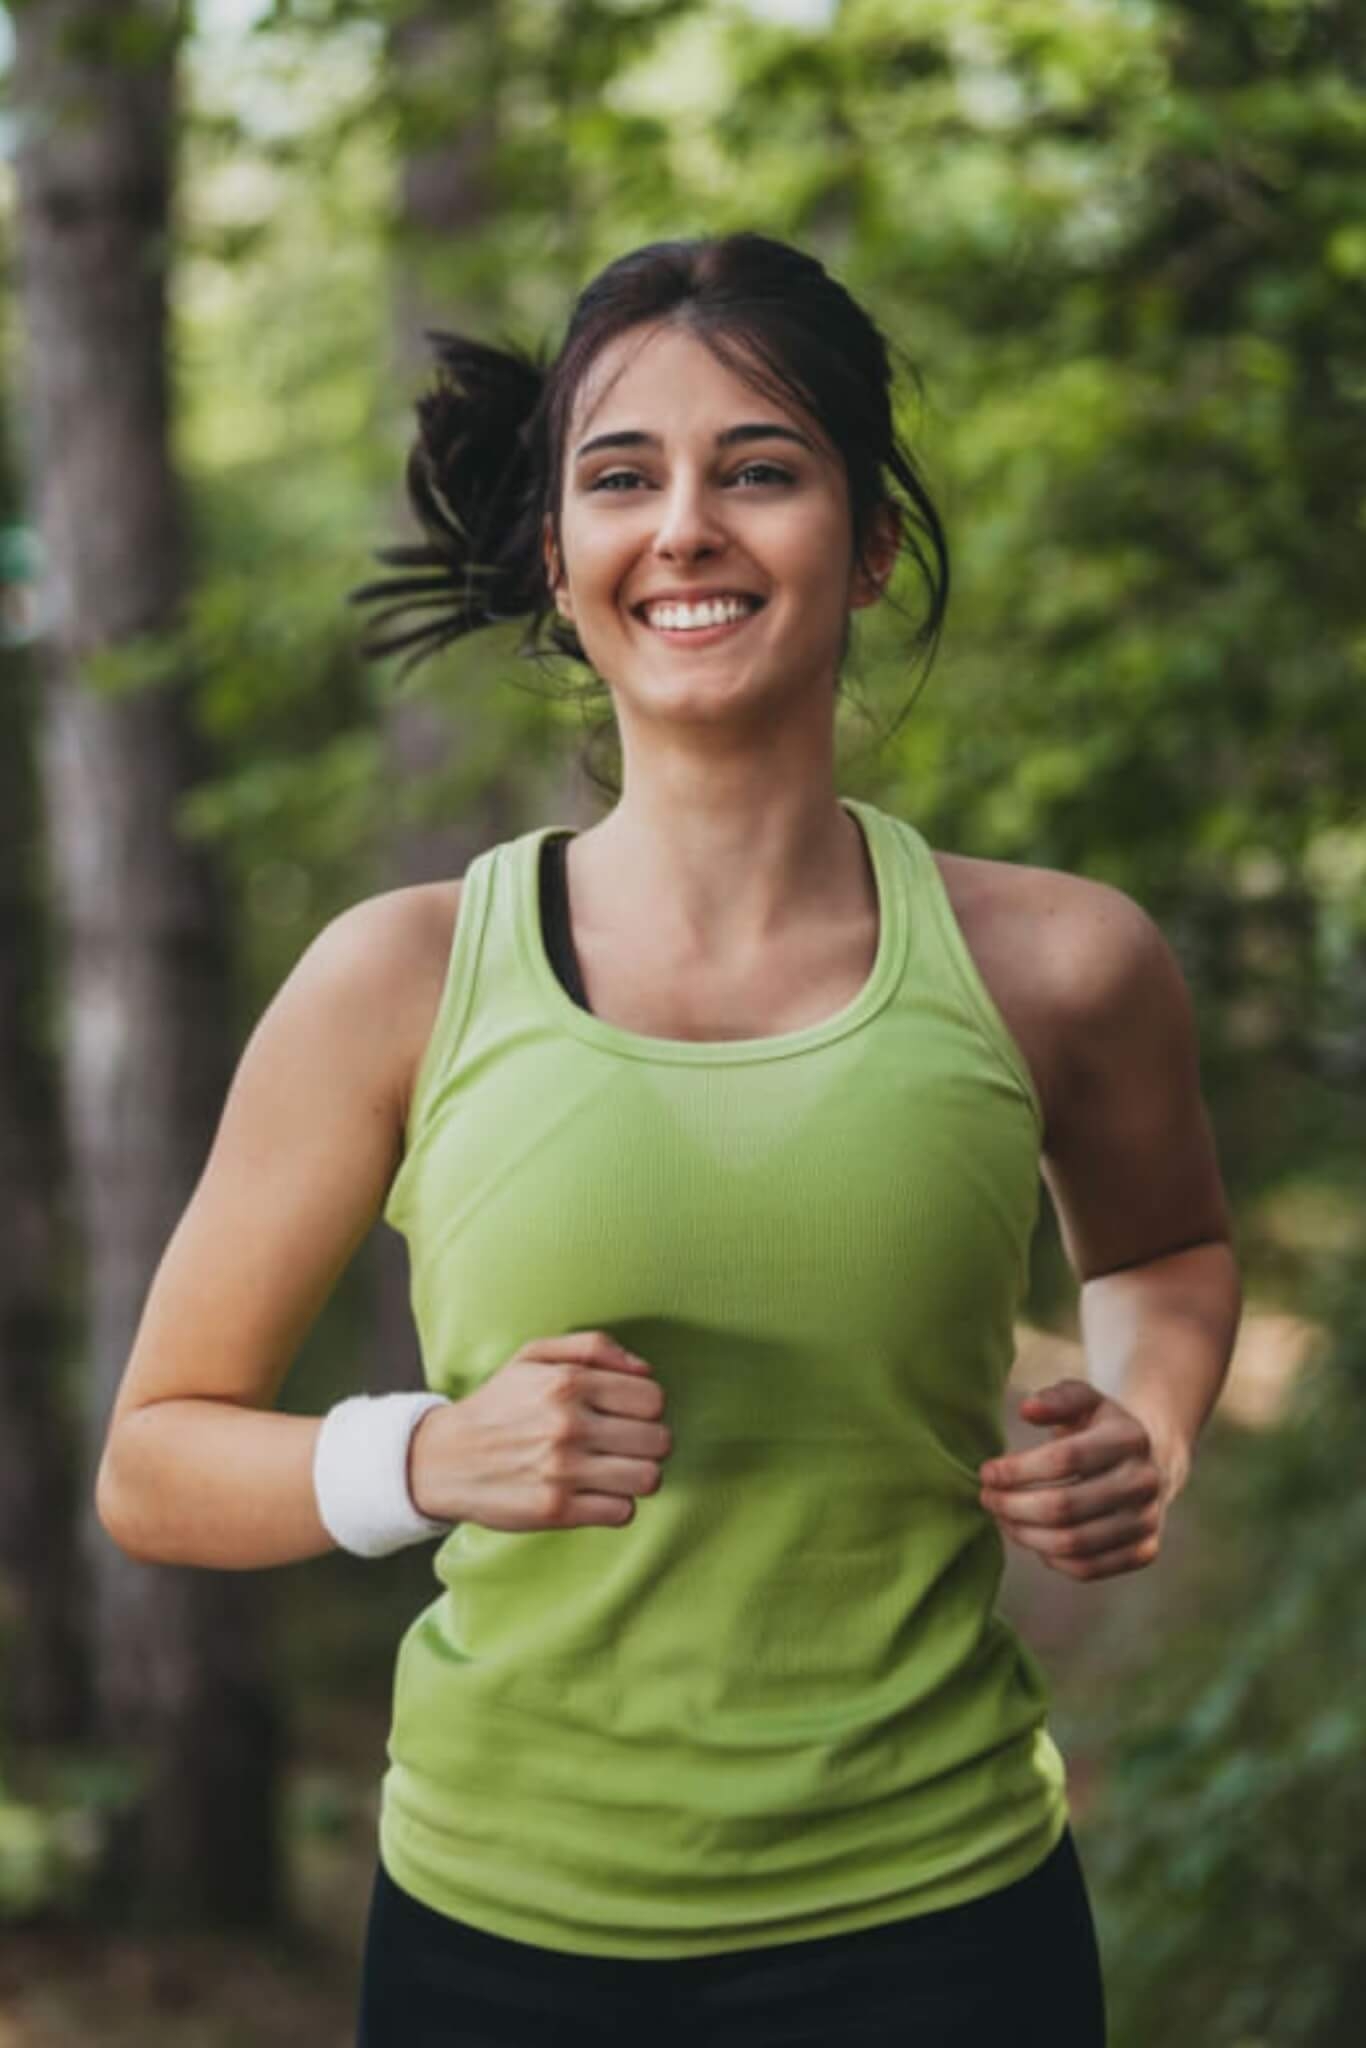 6. Faça caminhada  A caminhada é uma atividade de baixo impacto que pode ajudar a diminuir os níveis de açúcar no sangue e melhorar a saúde cardiovascular de maneira geral. Além disso, a prática melhora a postura e fortalece os músculos das pernas. Reprodução: EdiCase